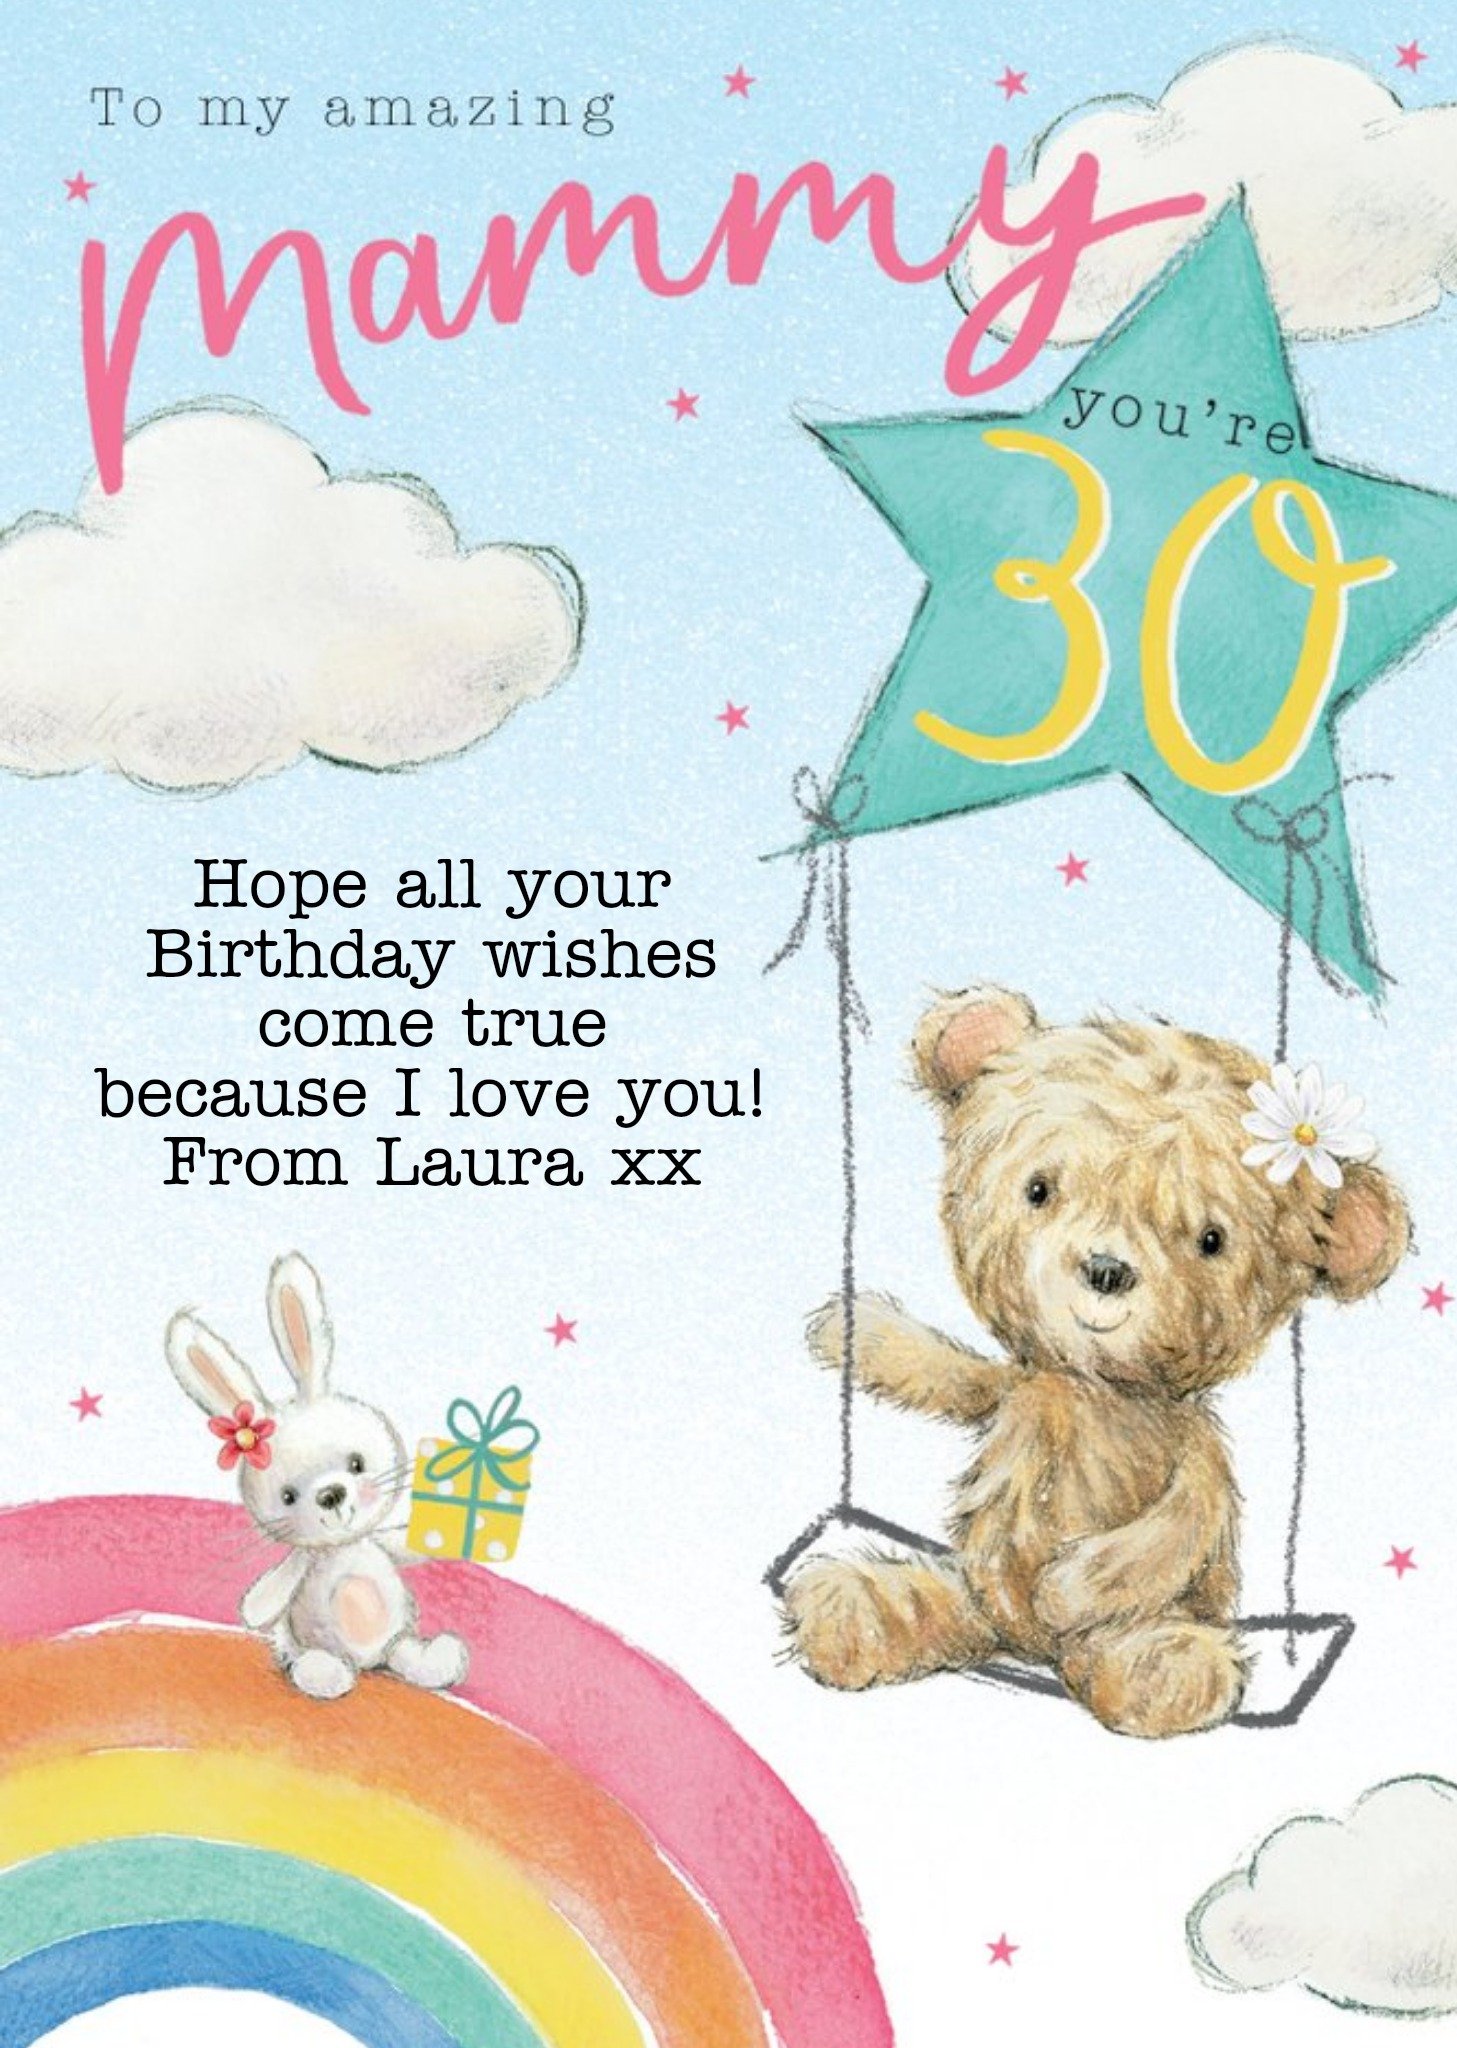 Moonpig Clintons Illustrated Rainbow Teddy Bear Mammy 30th Birthday Card Ecard